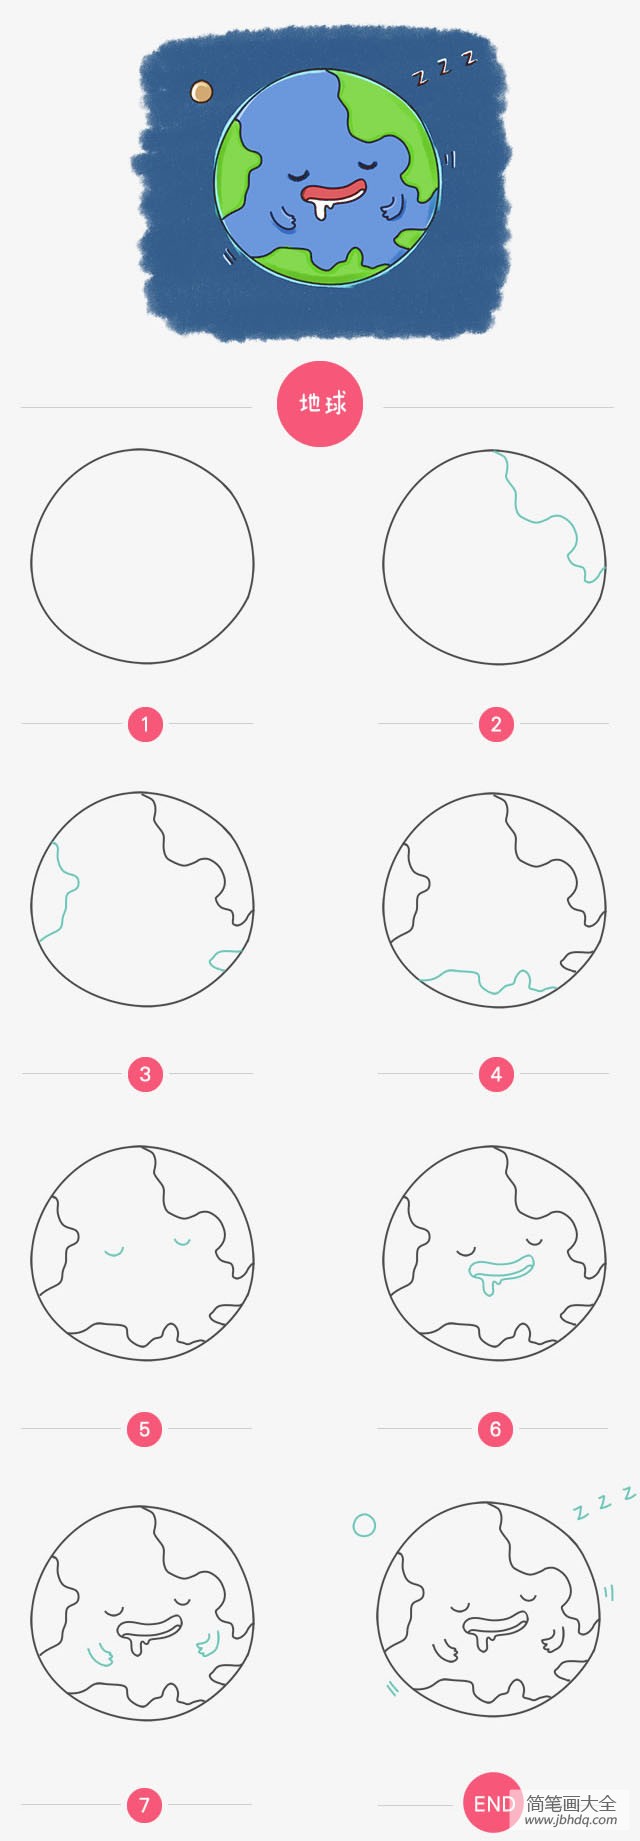 如何画地球简图图片